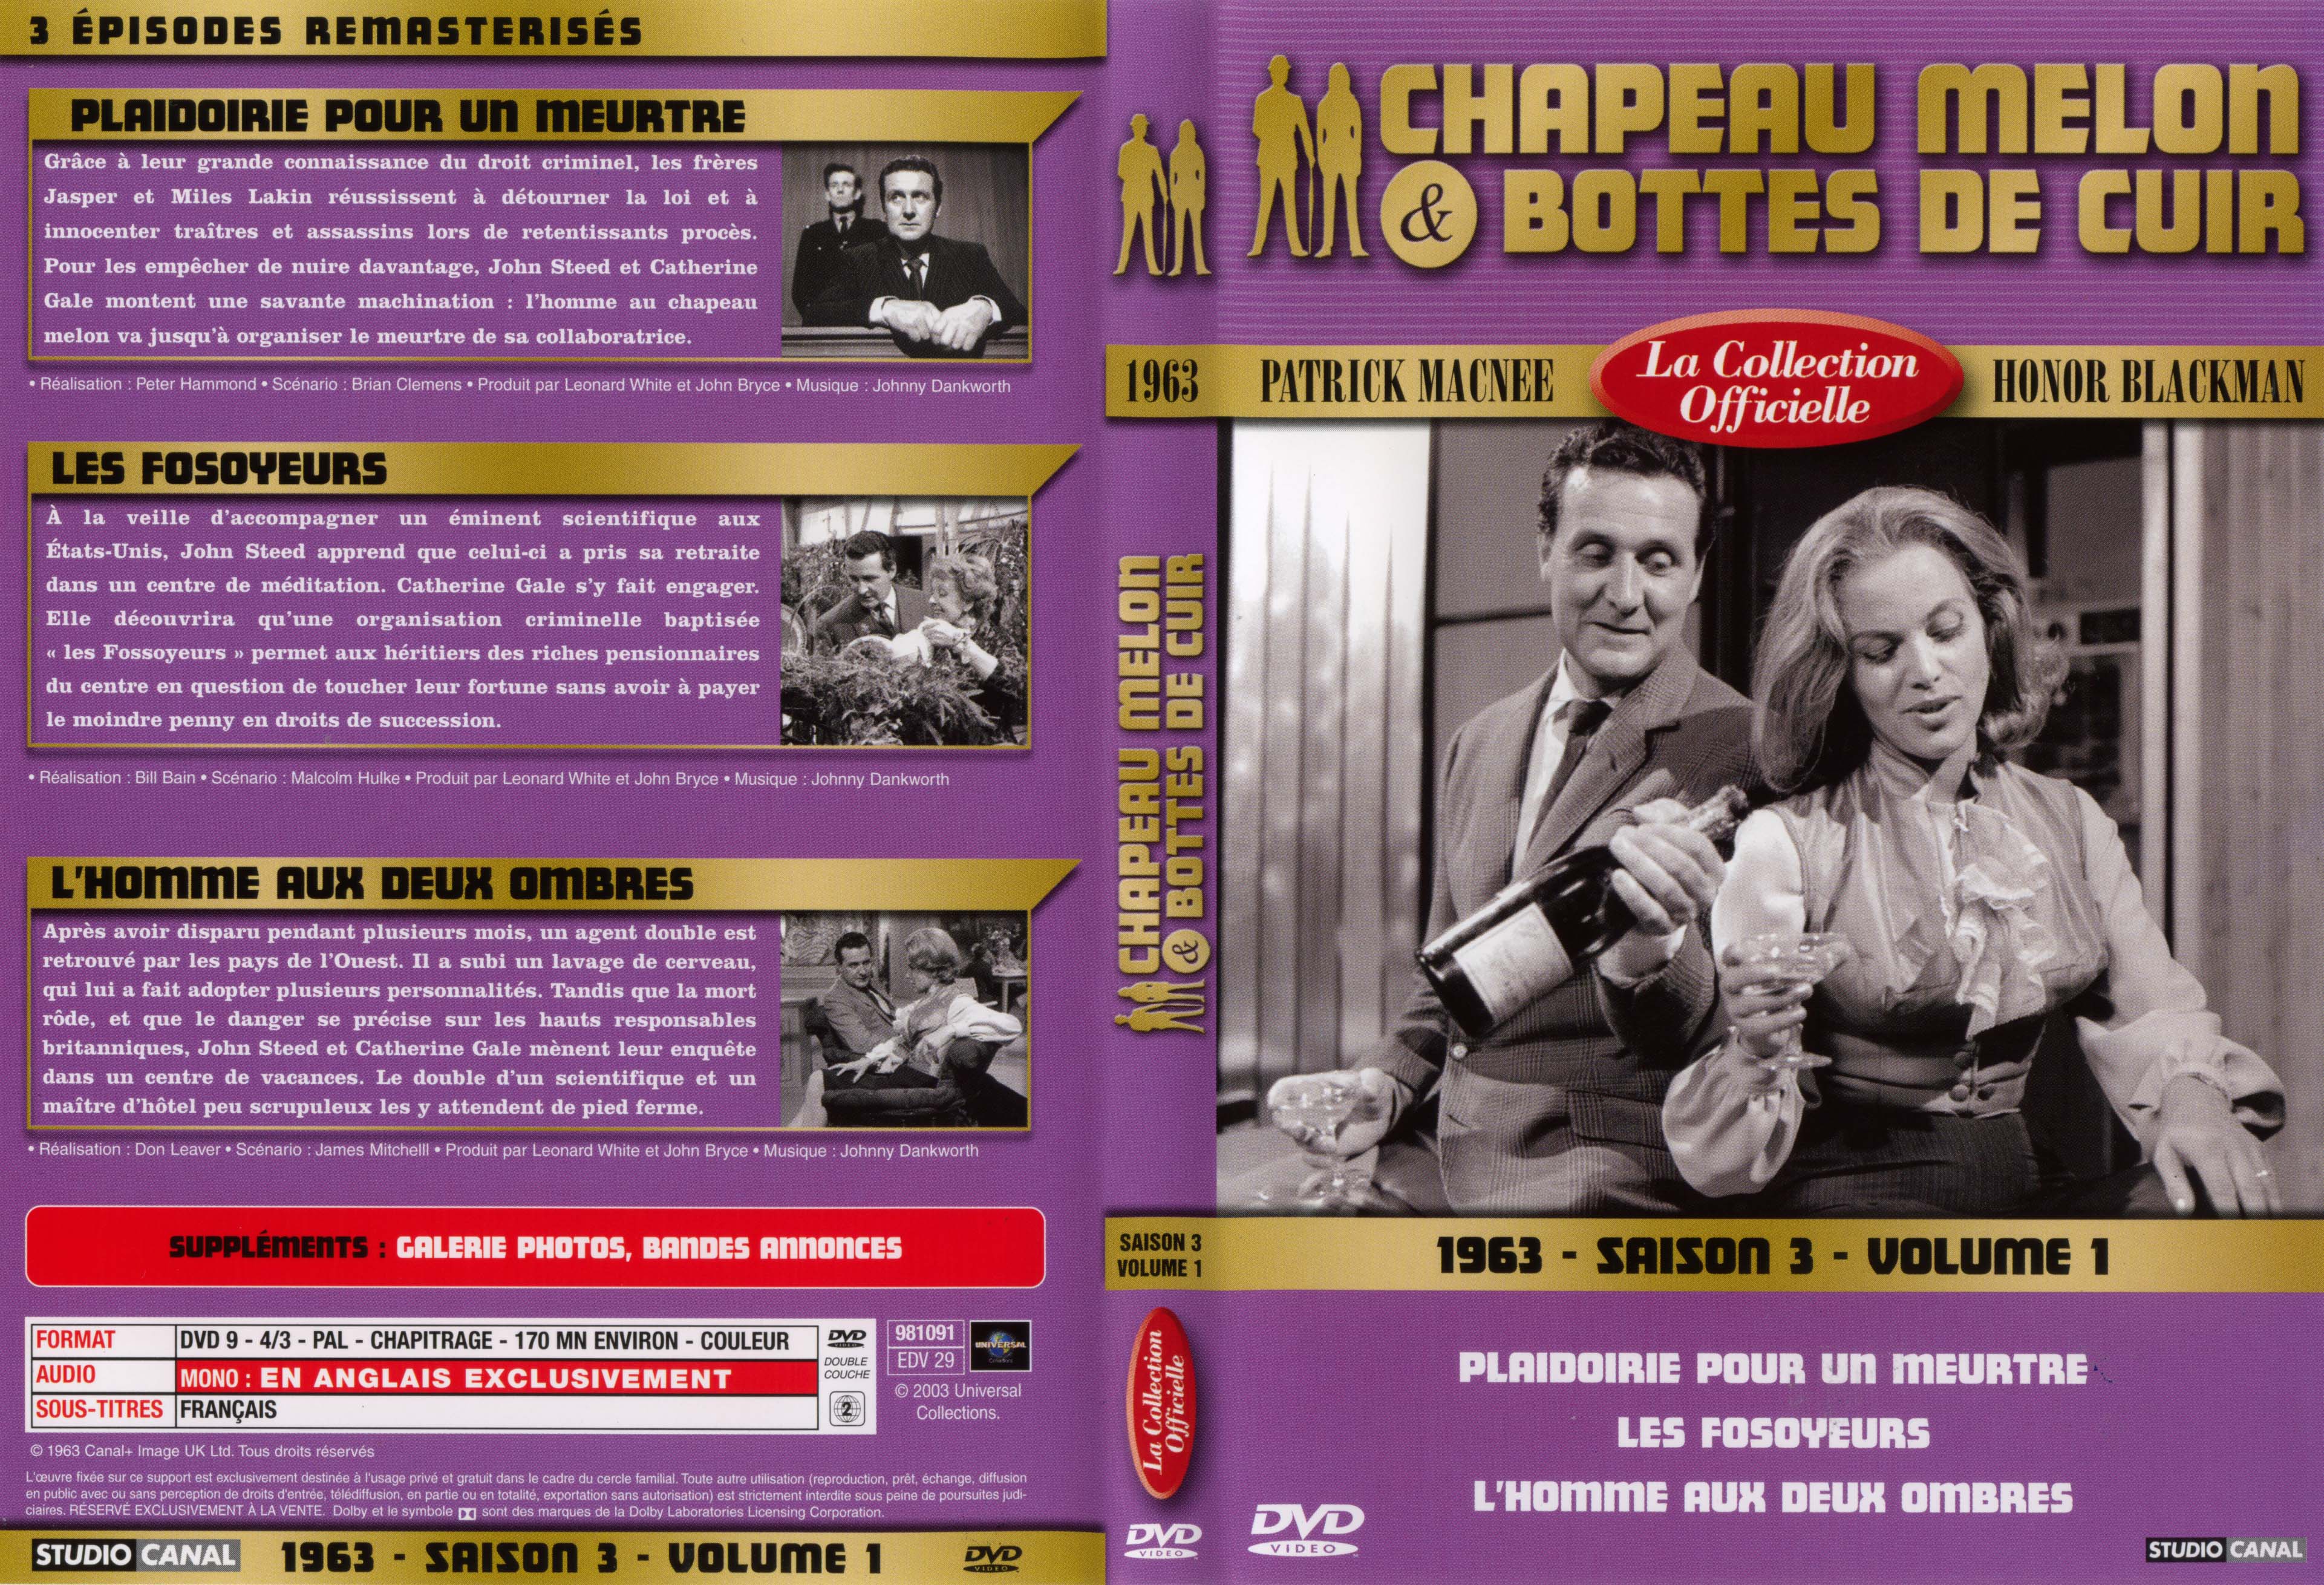 Jaquette DVD Chapeau melon et bottes de cuir 1963 saison 3 vol 1